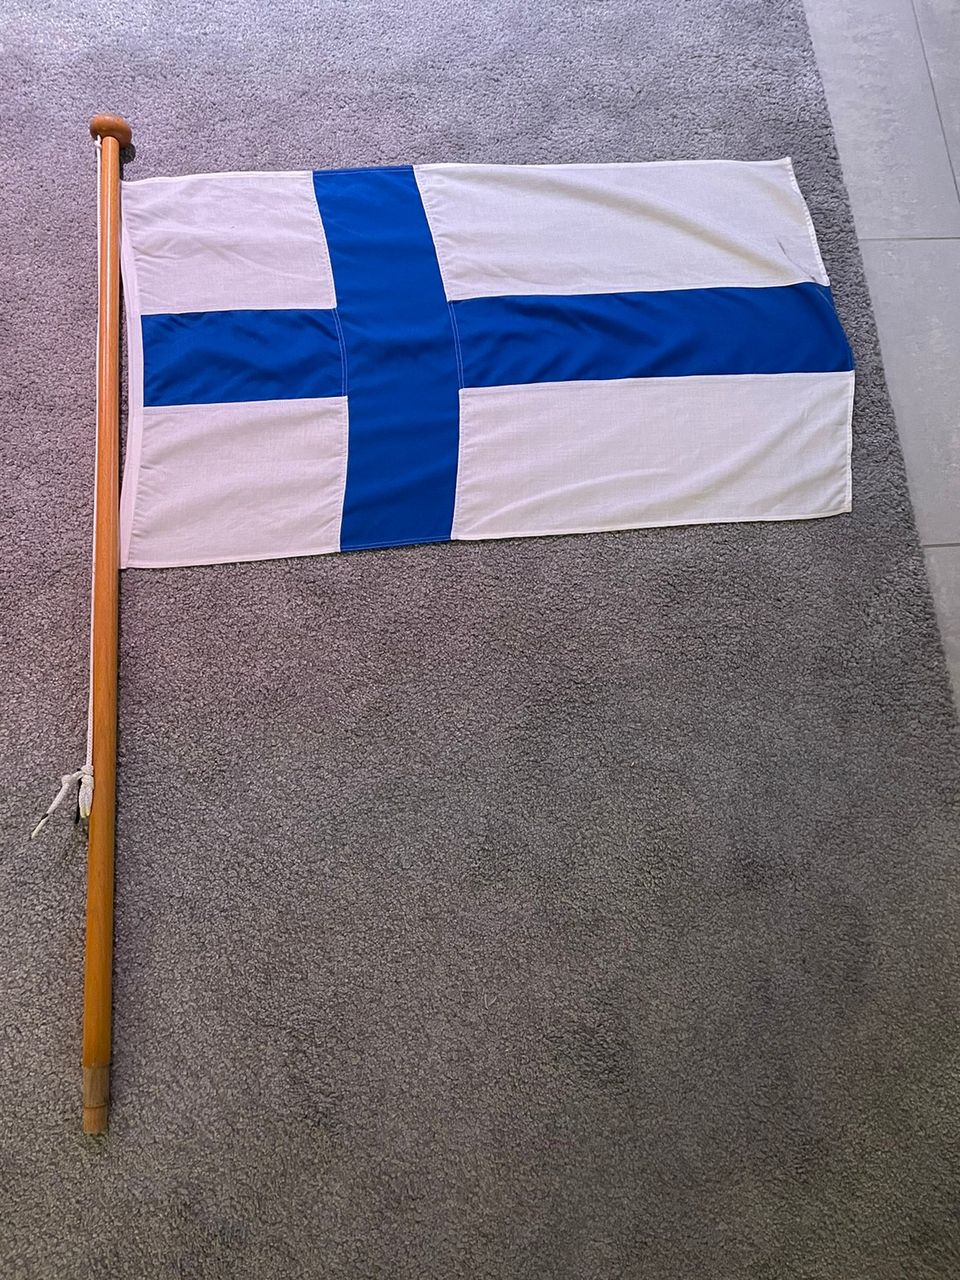 Suomen lippu ja tanko